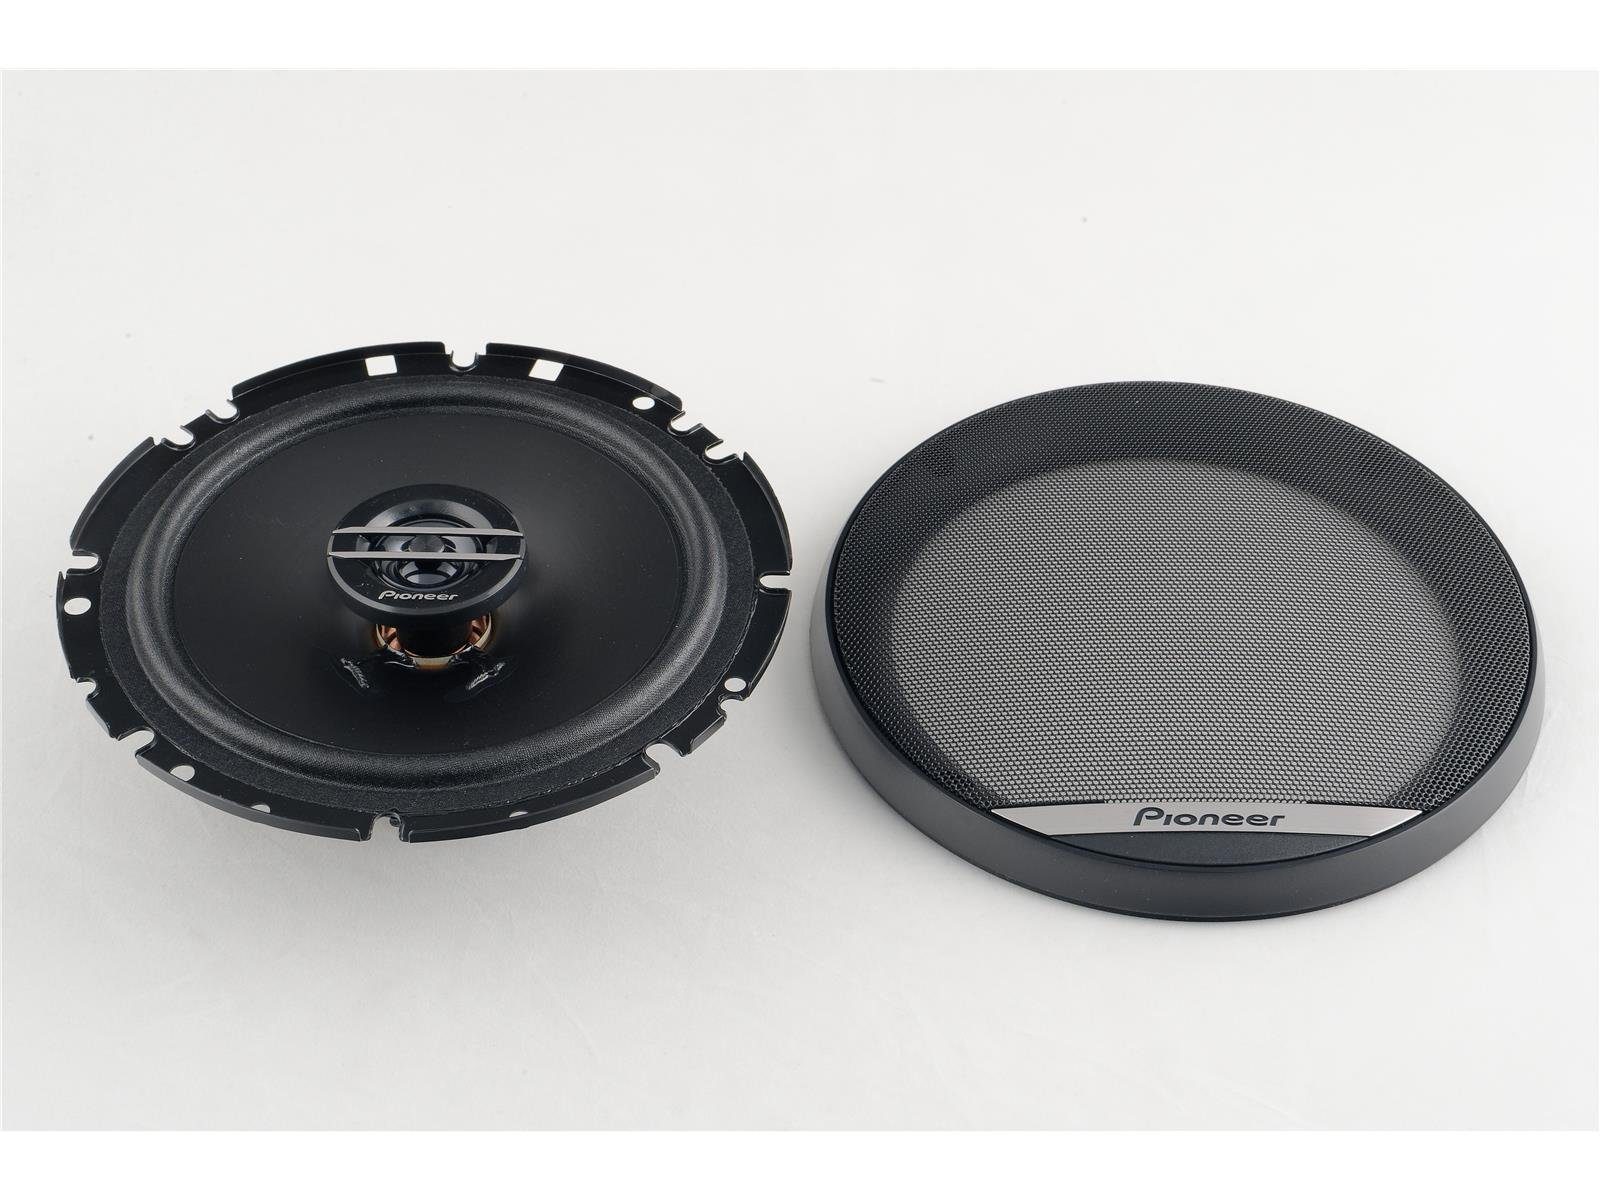 für passend 2009-2014 Pioneer Pioneer vorne T5.2 Lautsprecher VW Auto-Lautsprecher